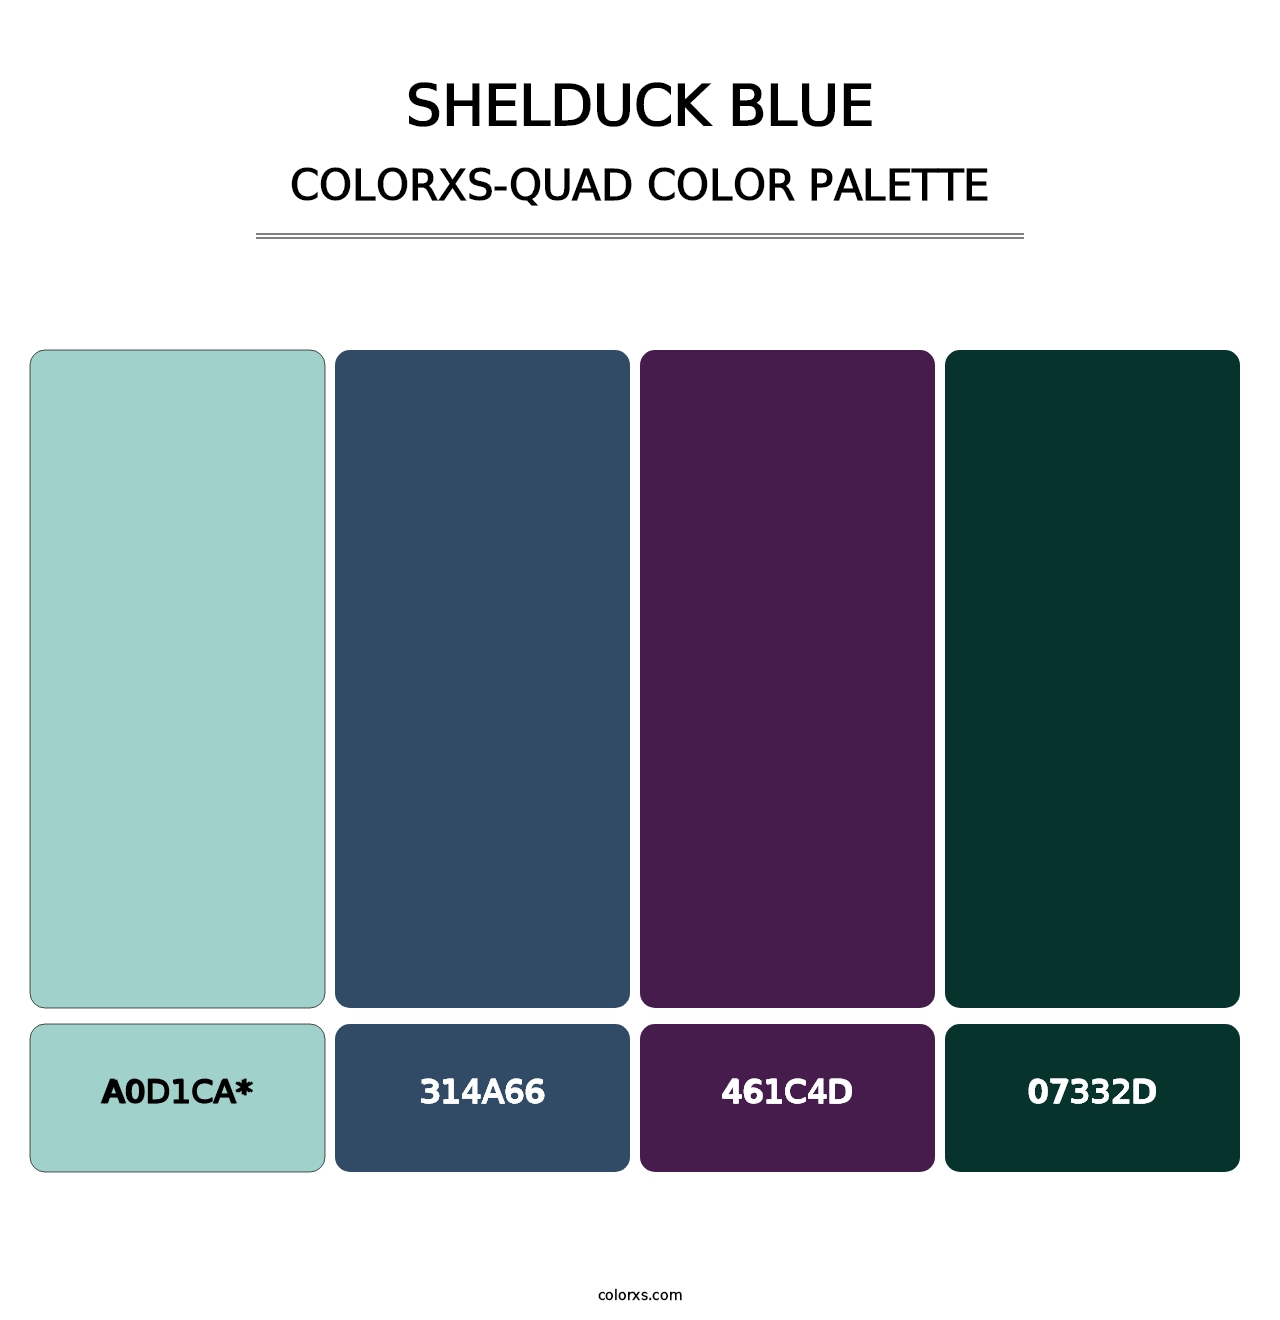 Shelduck Blue - Colorxs Quad Palette